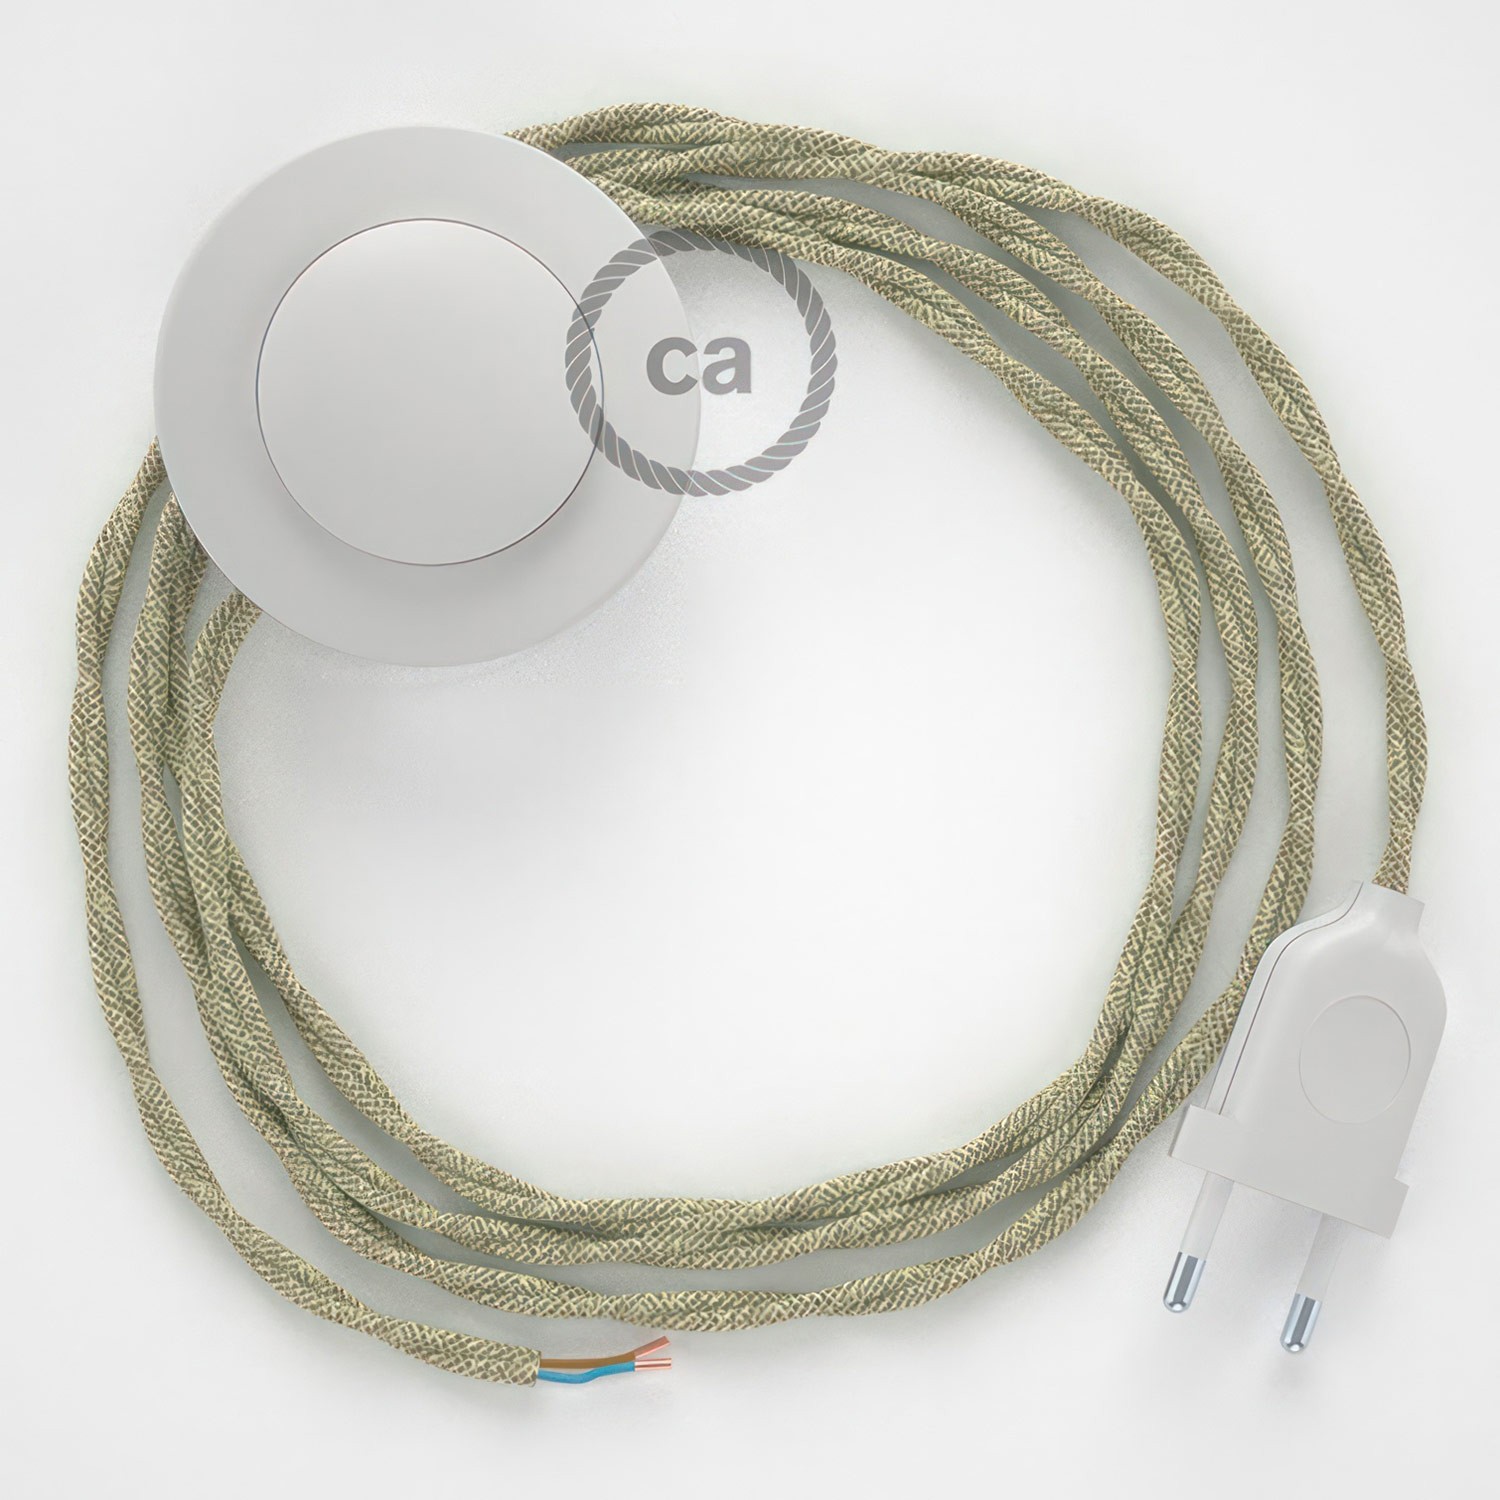 Cableado para lámpara de pie, cable TN01 Lino Natural Neutro 3 m. Elige tu el color de la clavija y del interruptor!